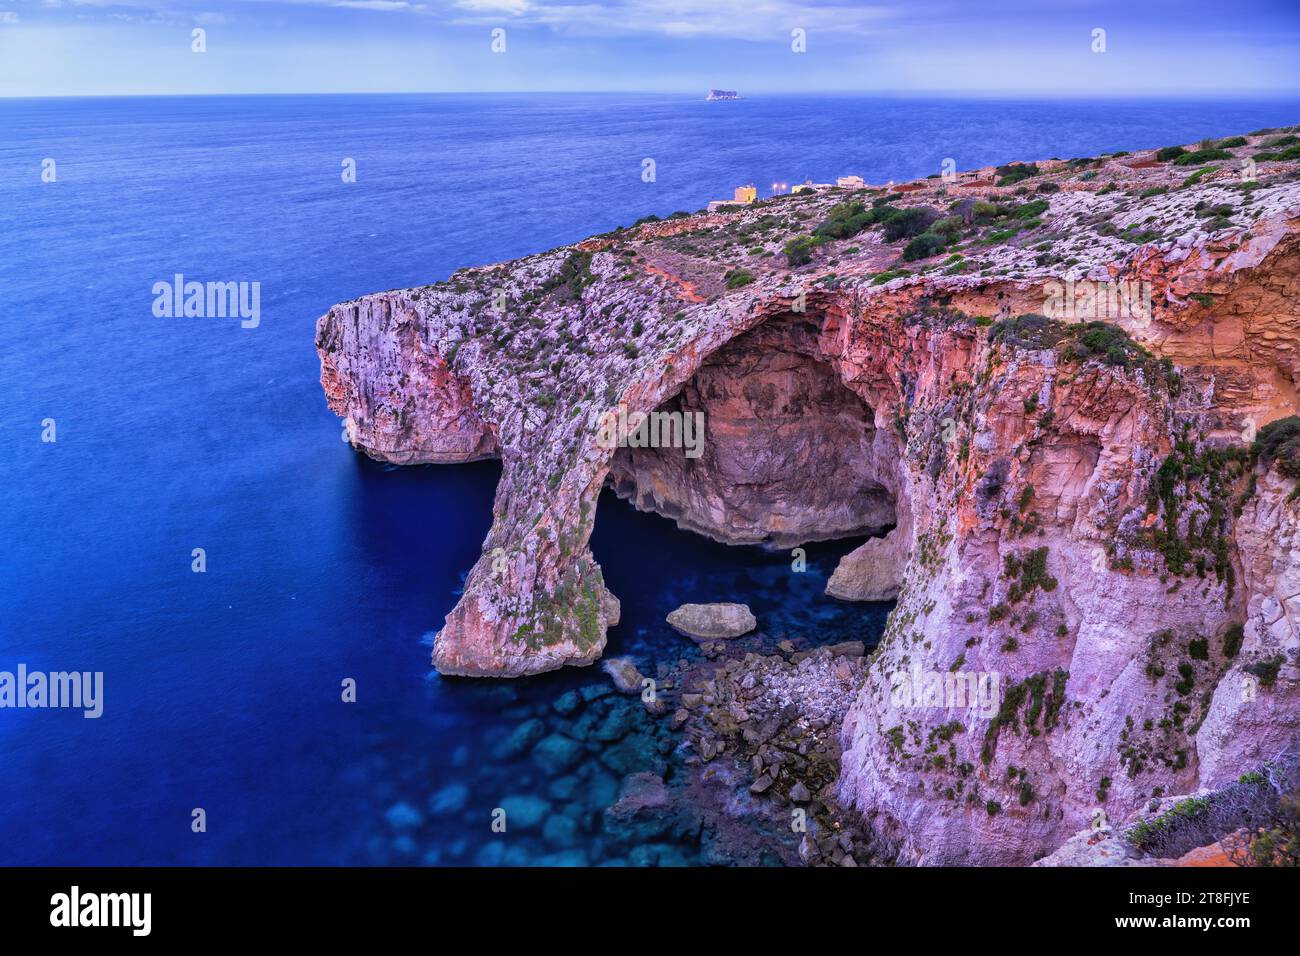 La grotta marina della Grotta Azzurra all'alba di Malta, una grotta storica nella costa sud-orientale dell'isola nel Mar Mediterraneo. Foto Stock